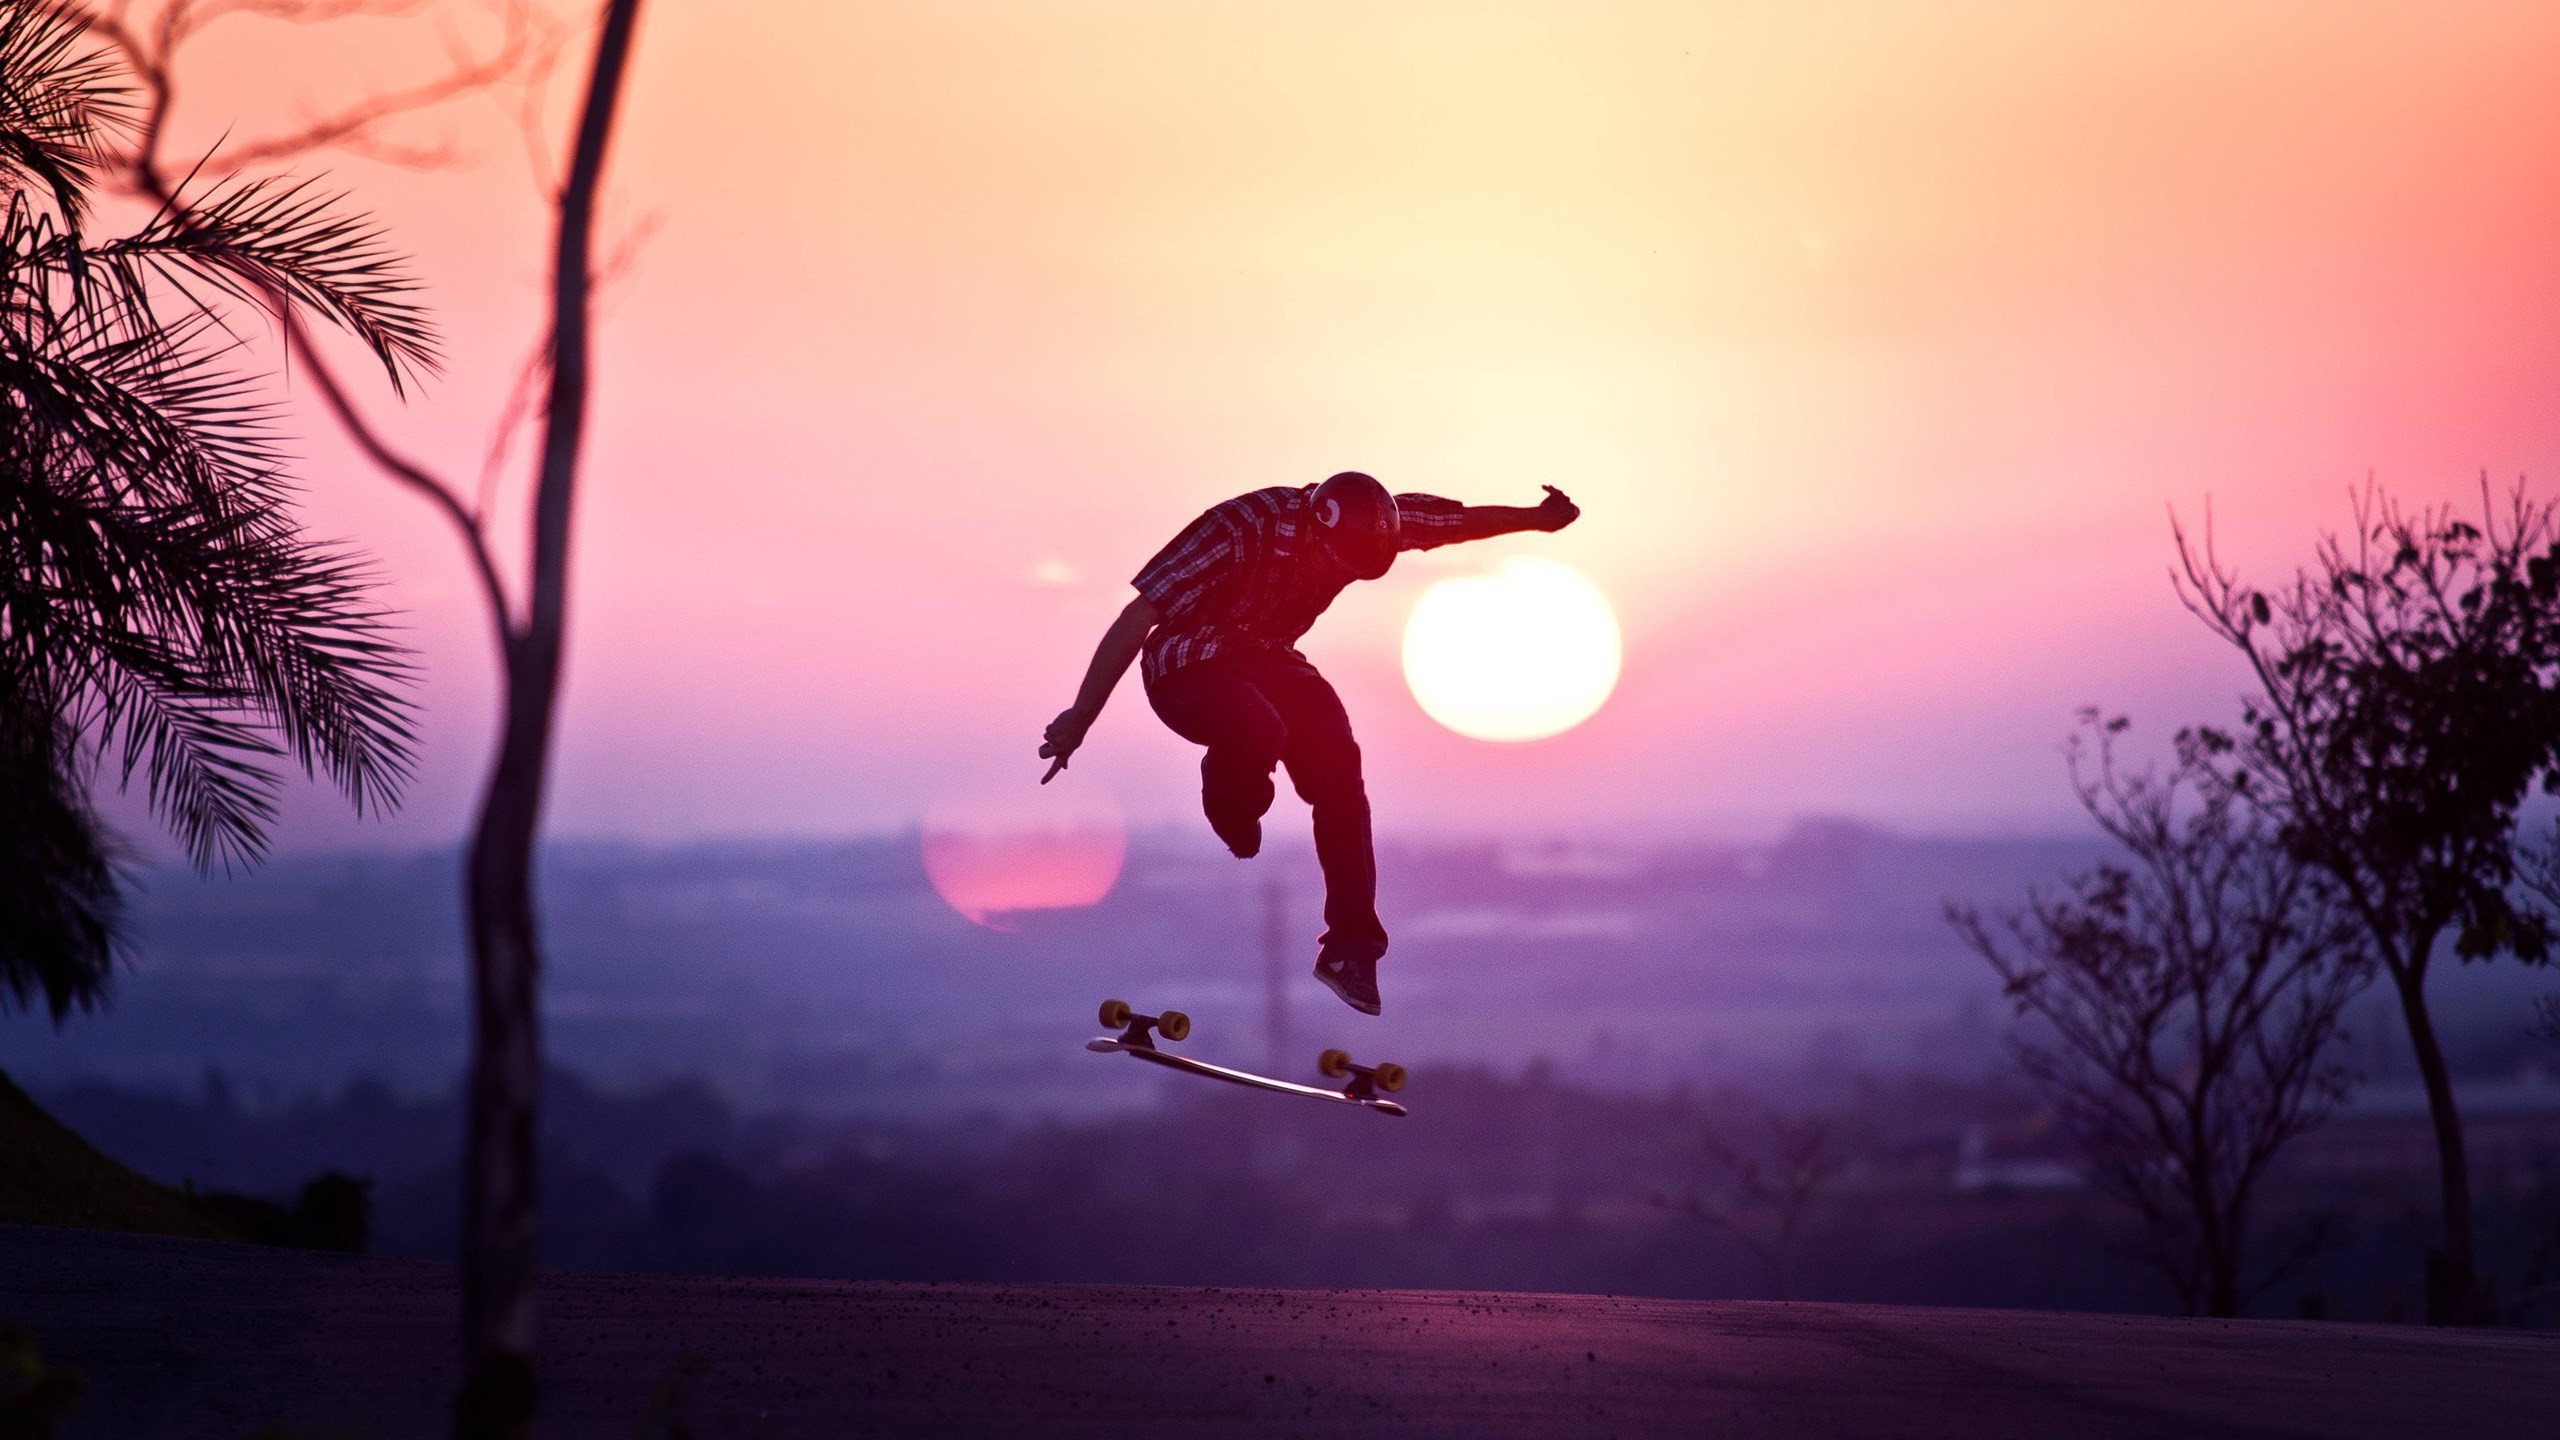 skate wallpaper,sky,skateboard,skateboarding,skateboarding equipment,recreation